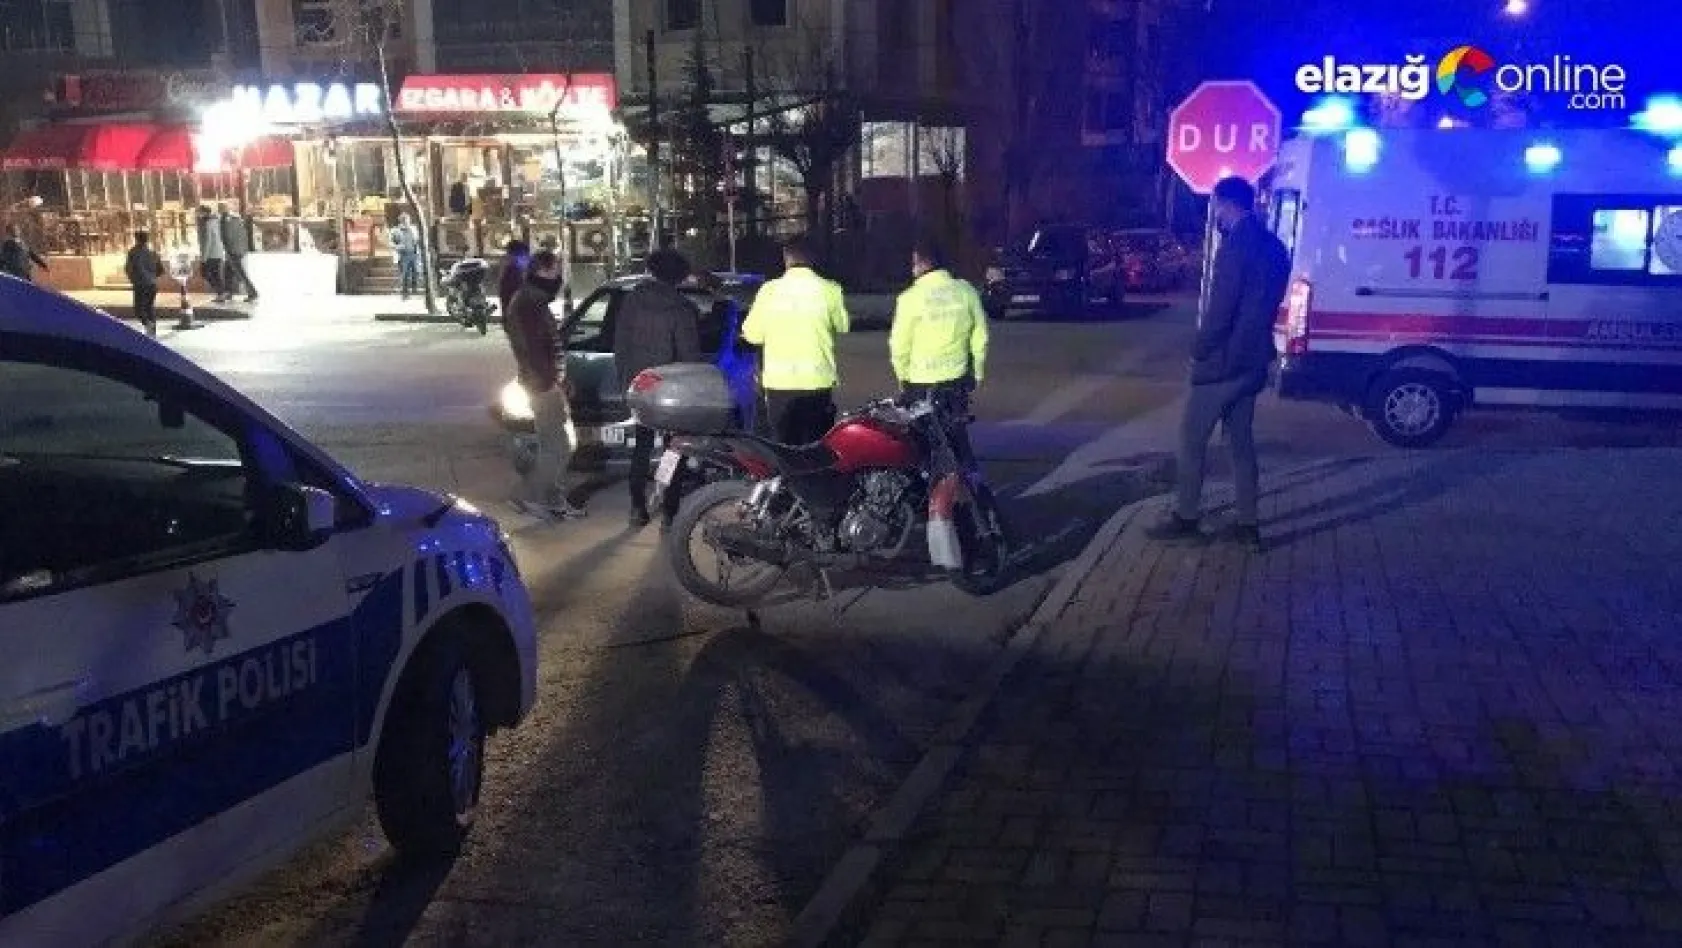 Elazığ'da son 24 saatte üçüncü motosiklet kazası!